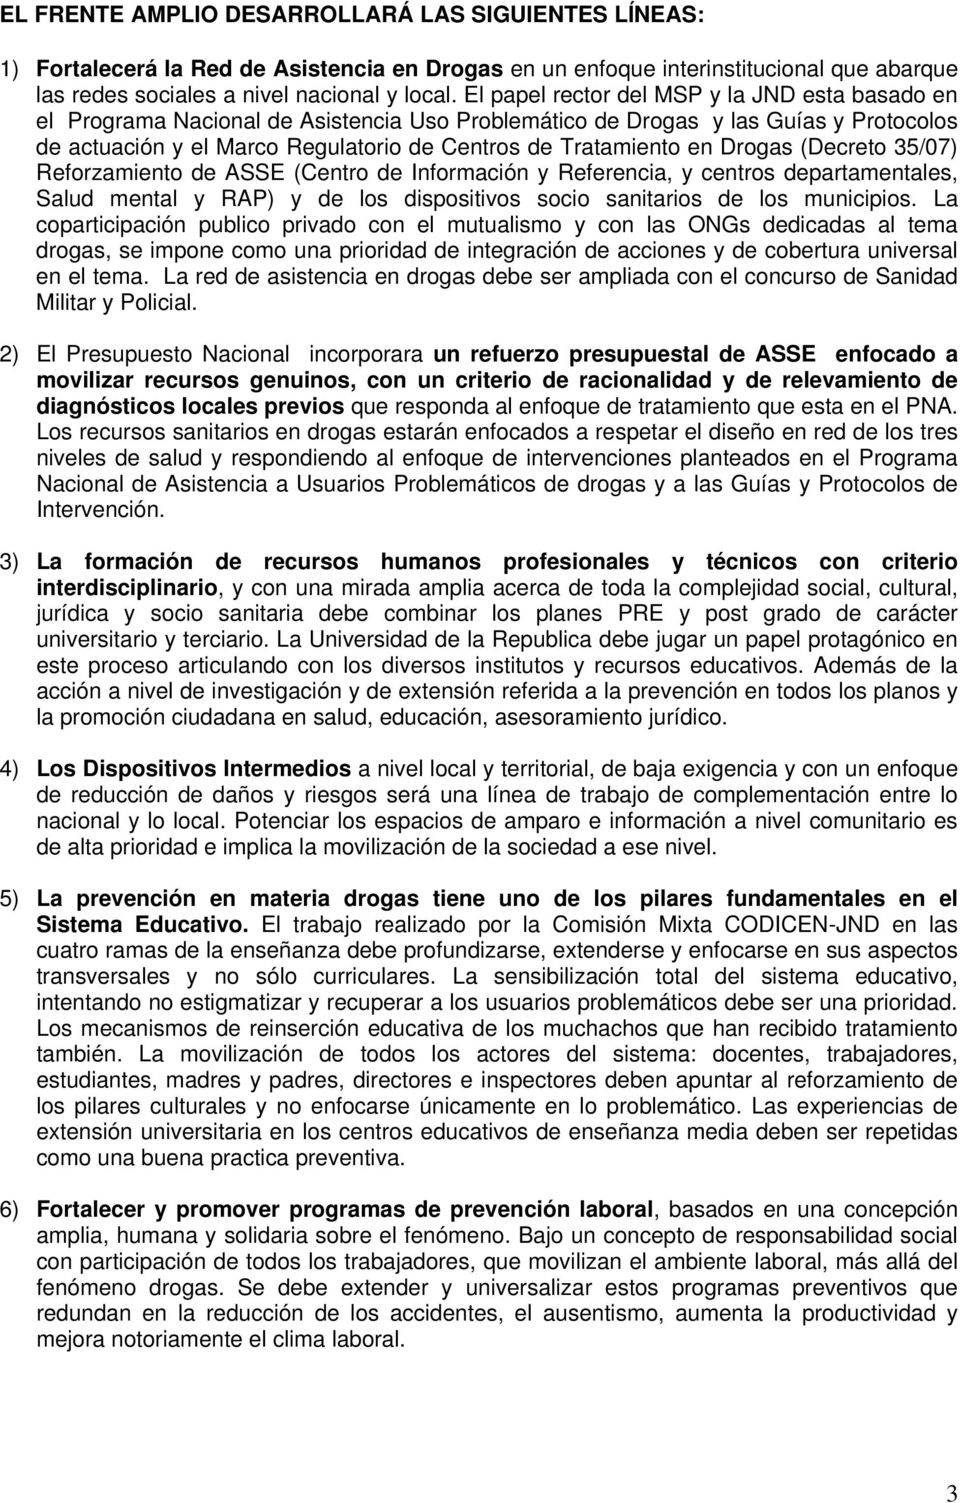 Drogas (Decreto 35/07) Reforzamiento de ASSE (Centro de Información y Referencia, y centros departamentales, Salud mental y RAP) y de los dispositivos socio sanitarios de los municipios.